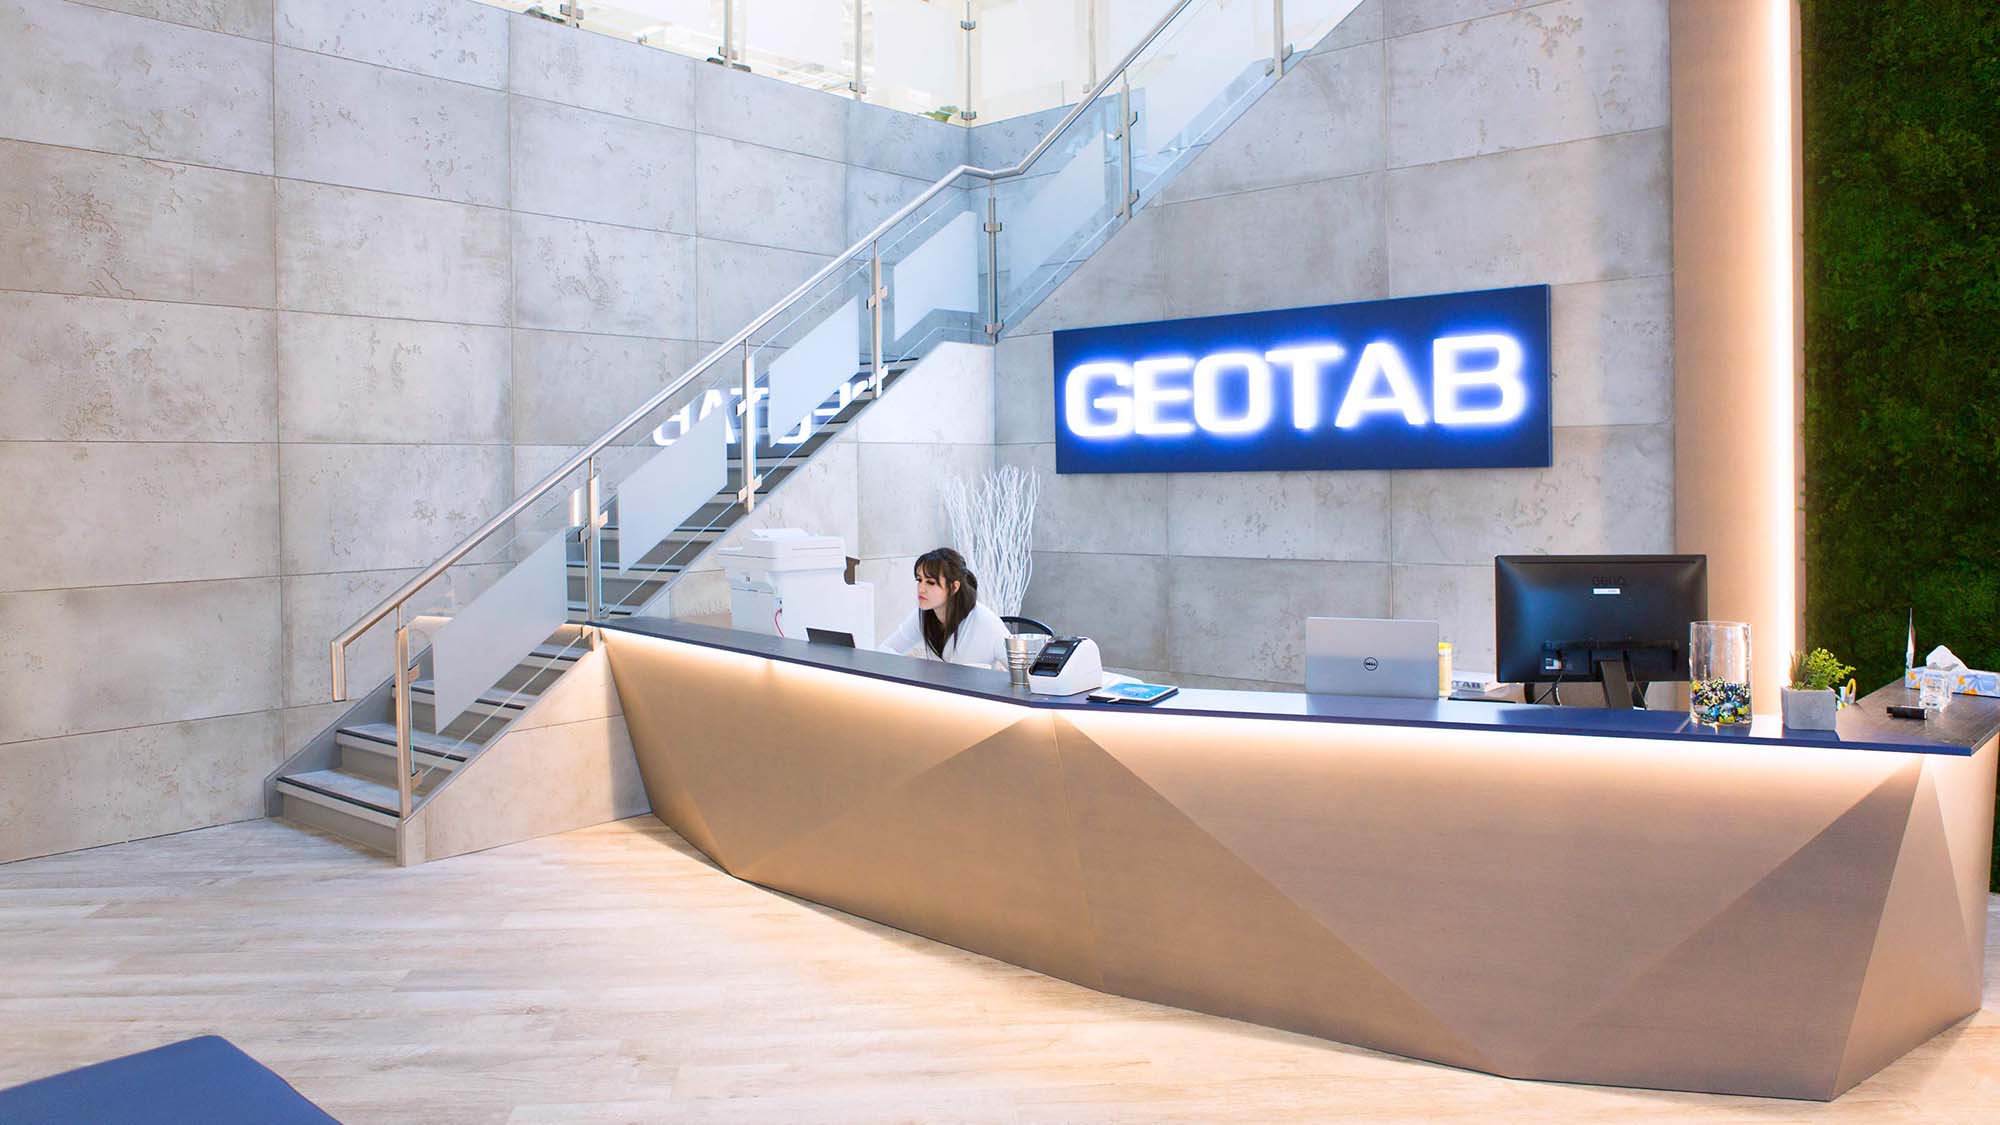 geotab hq reception desk with a receptionist 